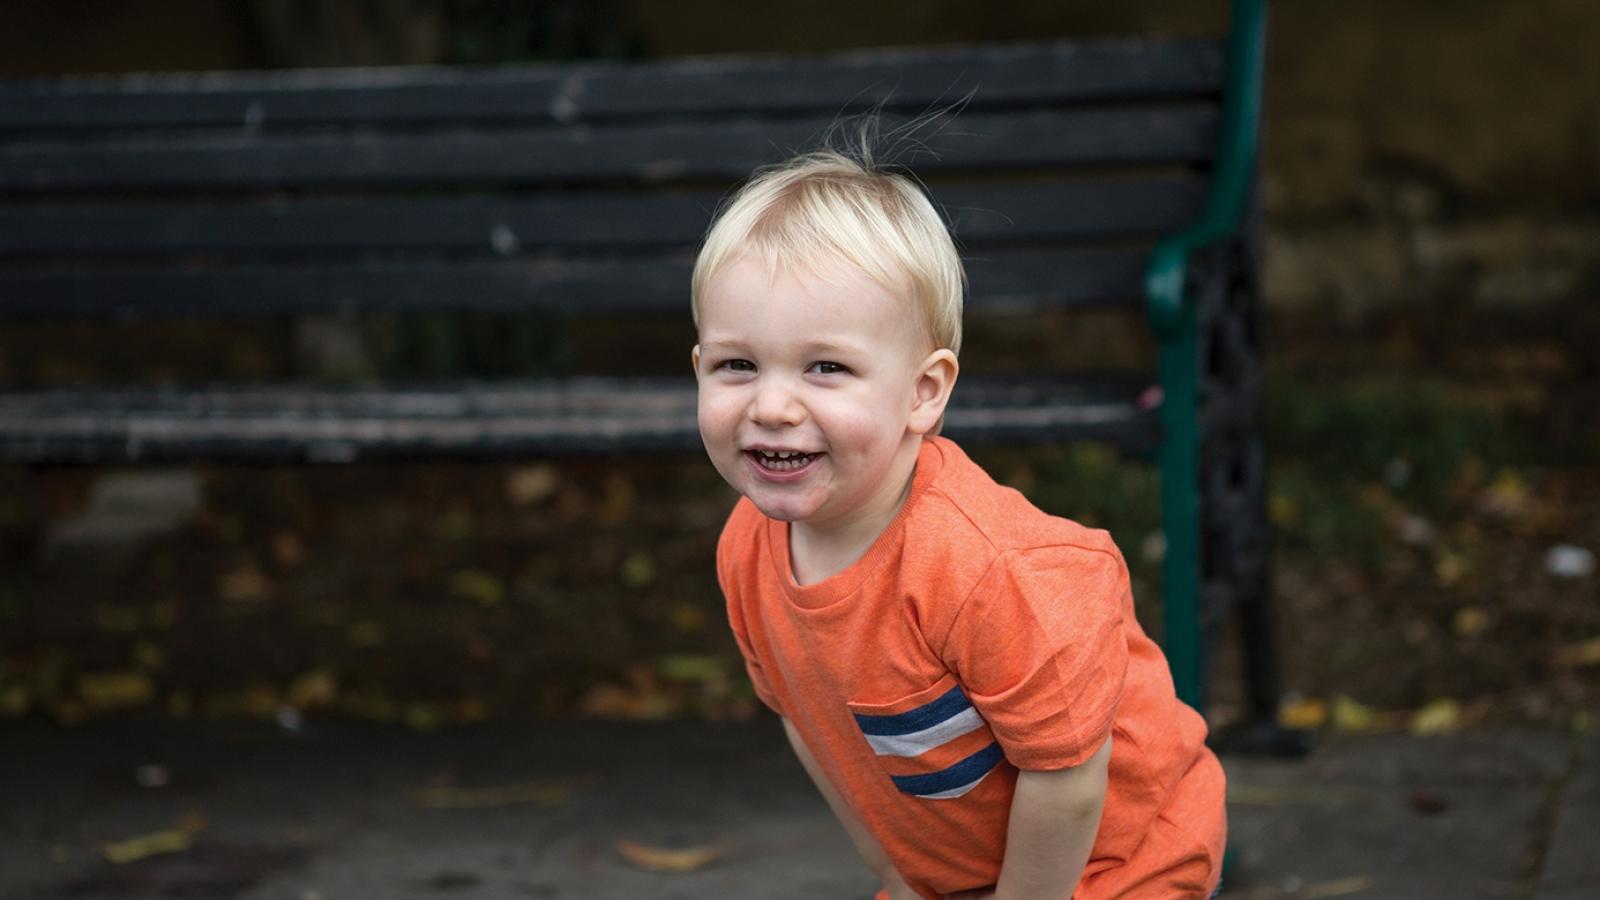 Smiling toddler in orange t shirt